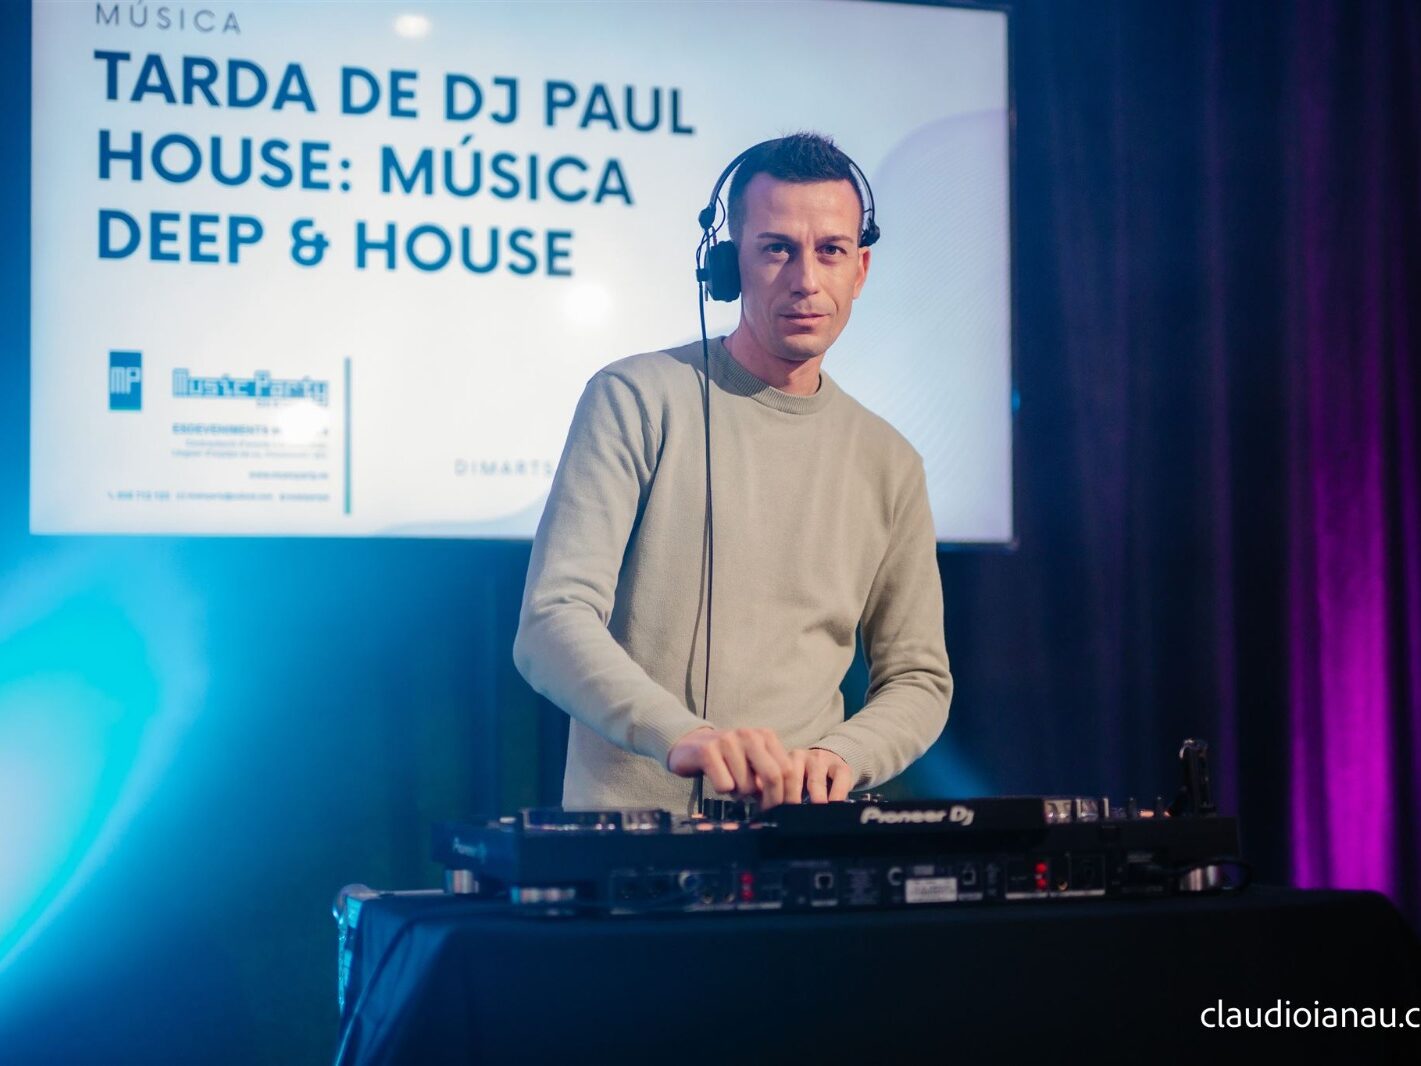 Pau Da House - Music Party